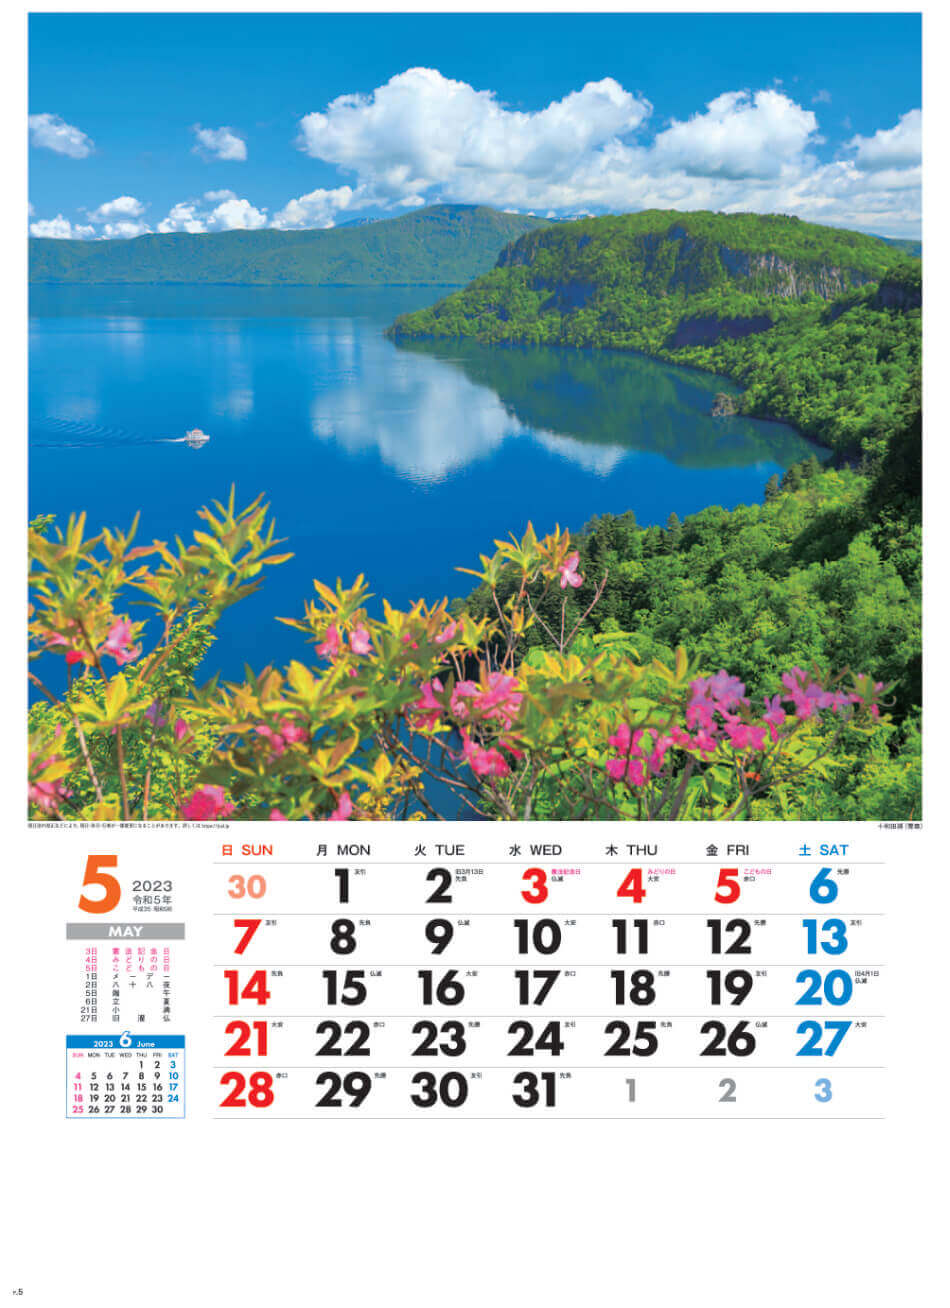 5月 5十和田湖(青森) 美しき日本 2023年カレンダーの画像